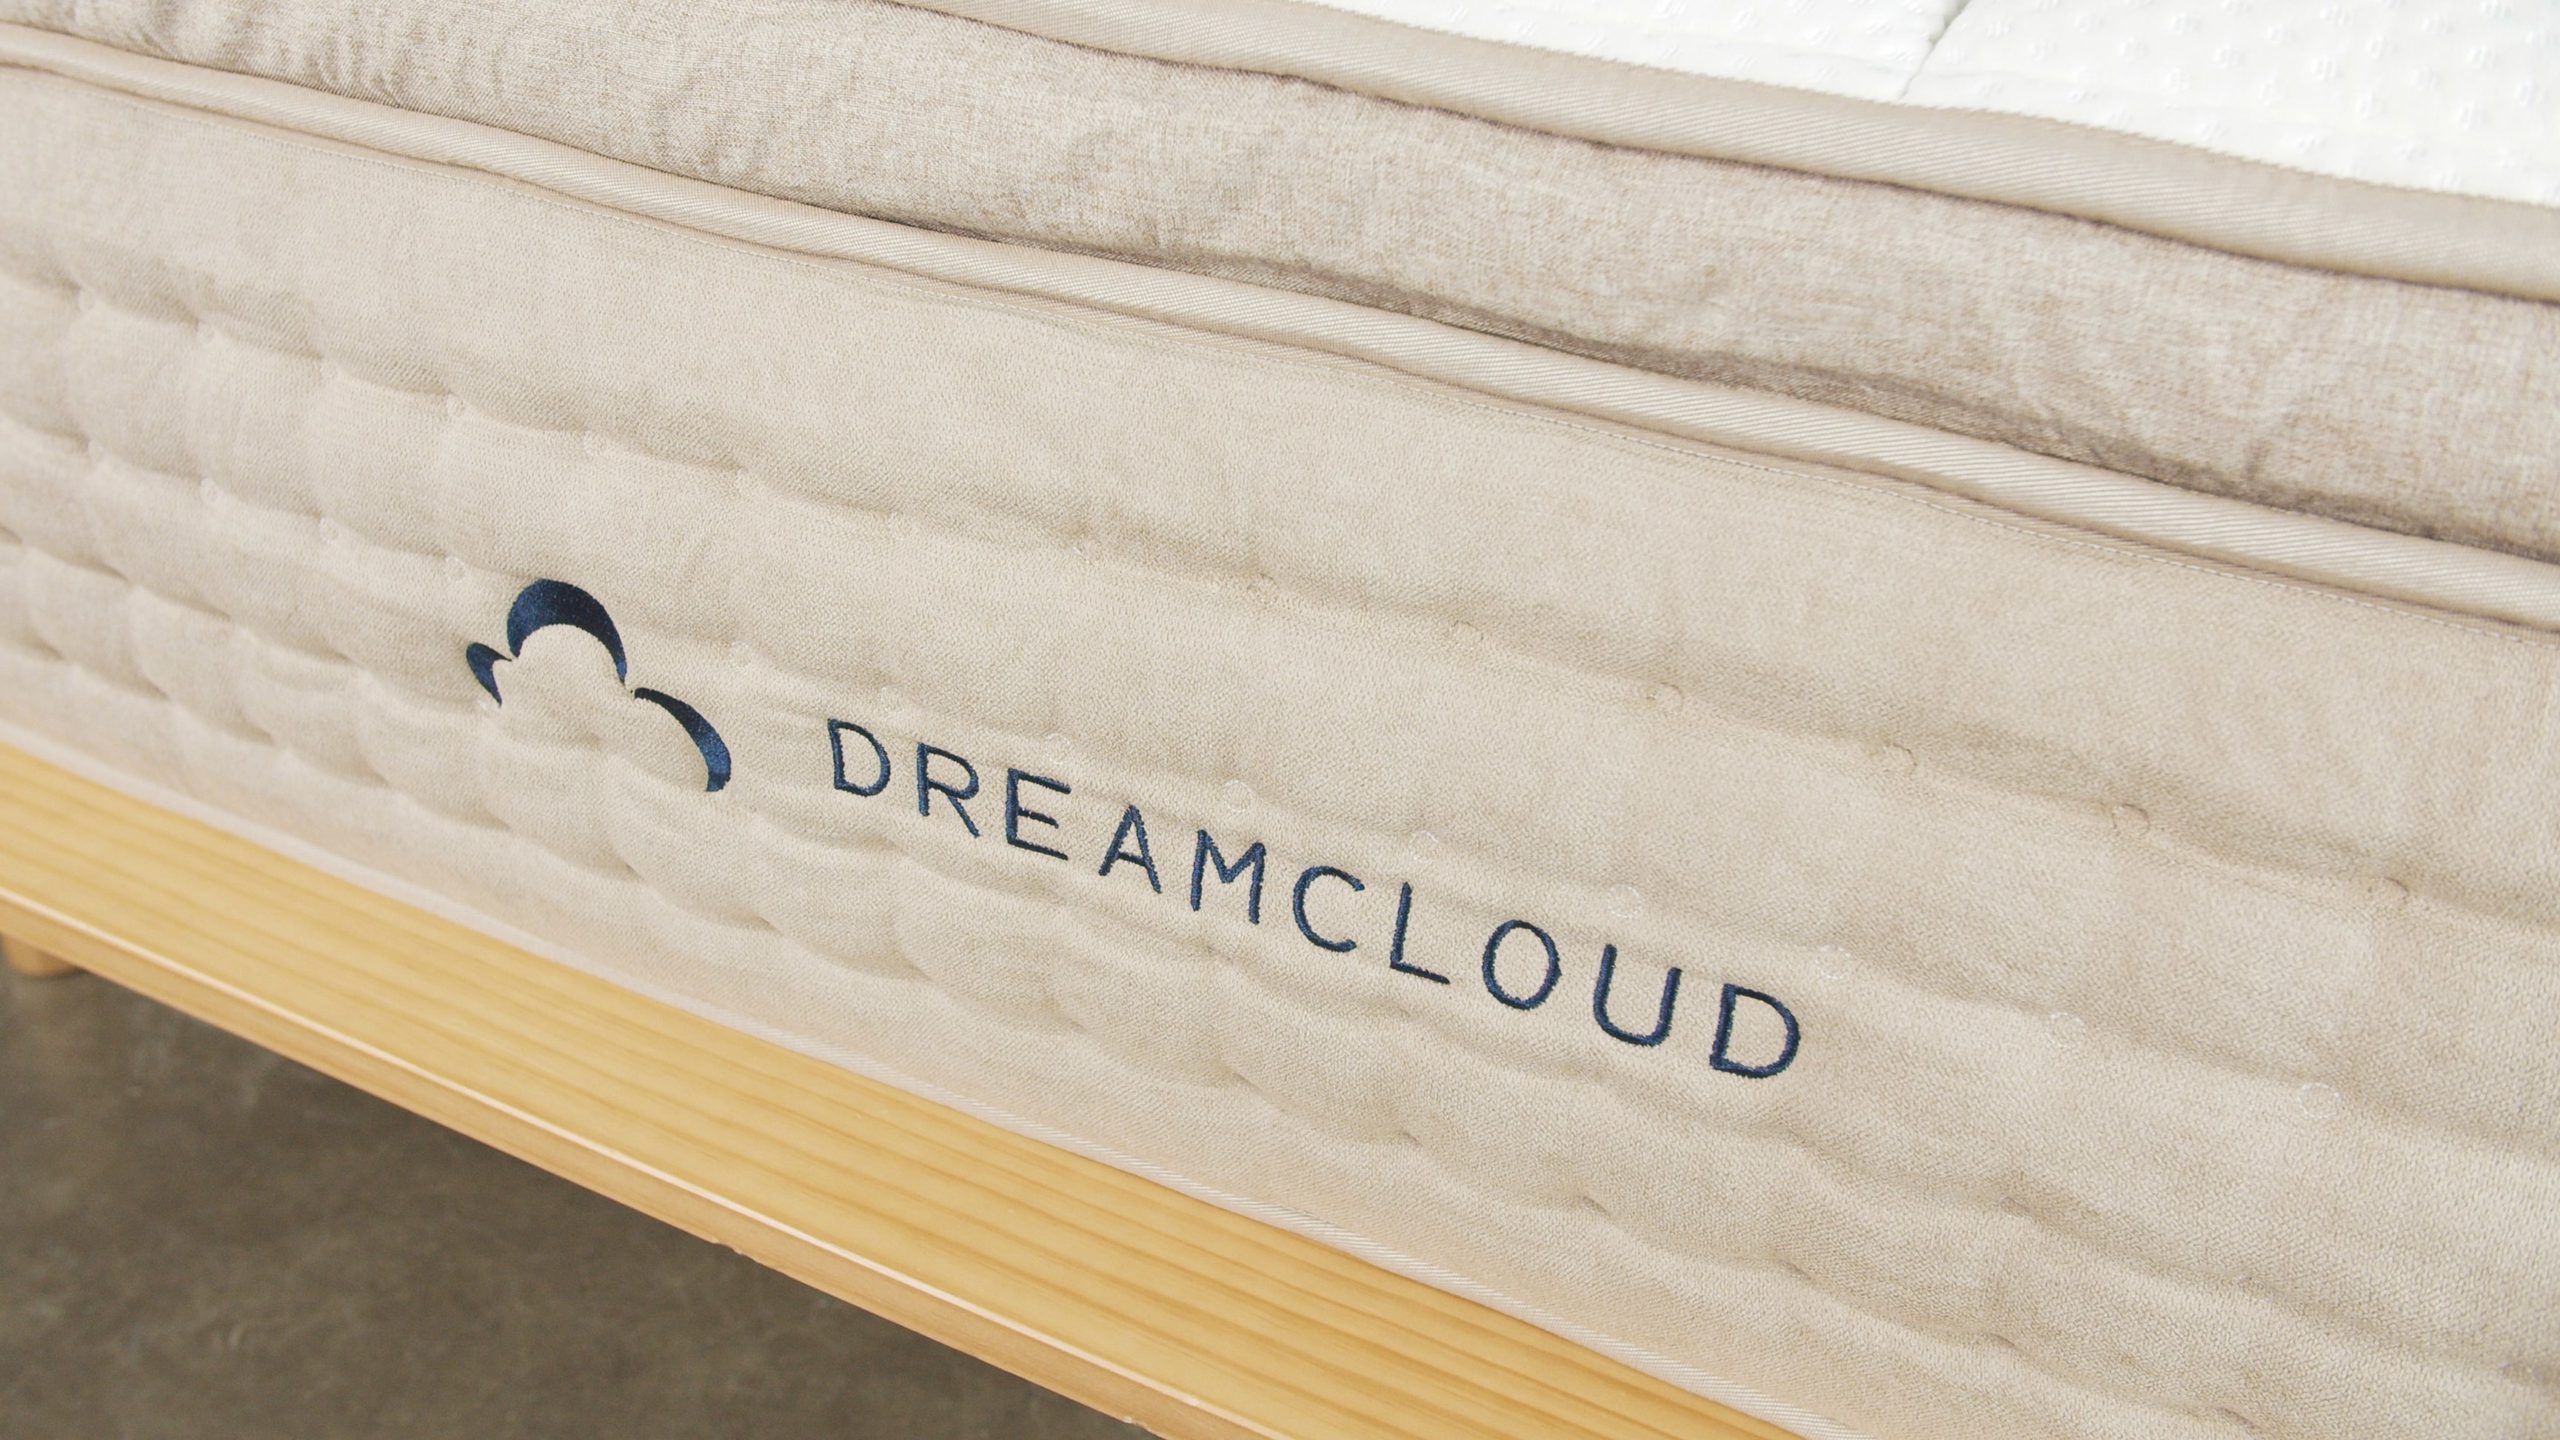 dreamcloud mattress closeup on logo